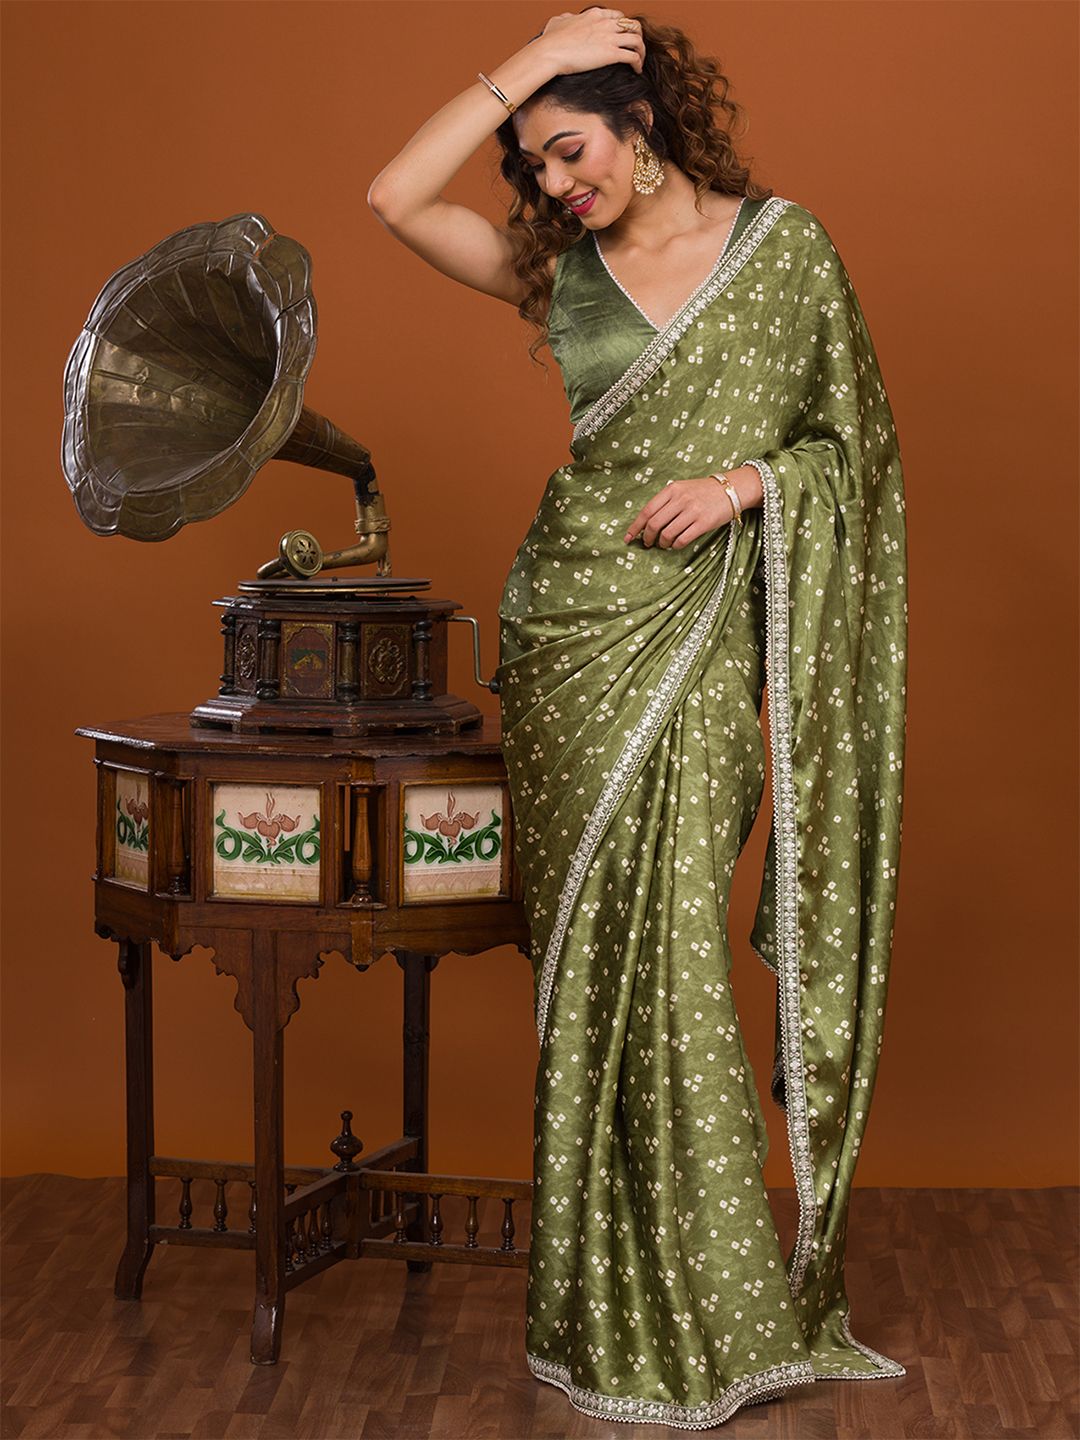 Koskii Green & White Bandhani Embroidered Bandhani Saree Price in India